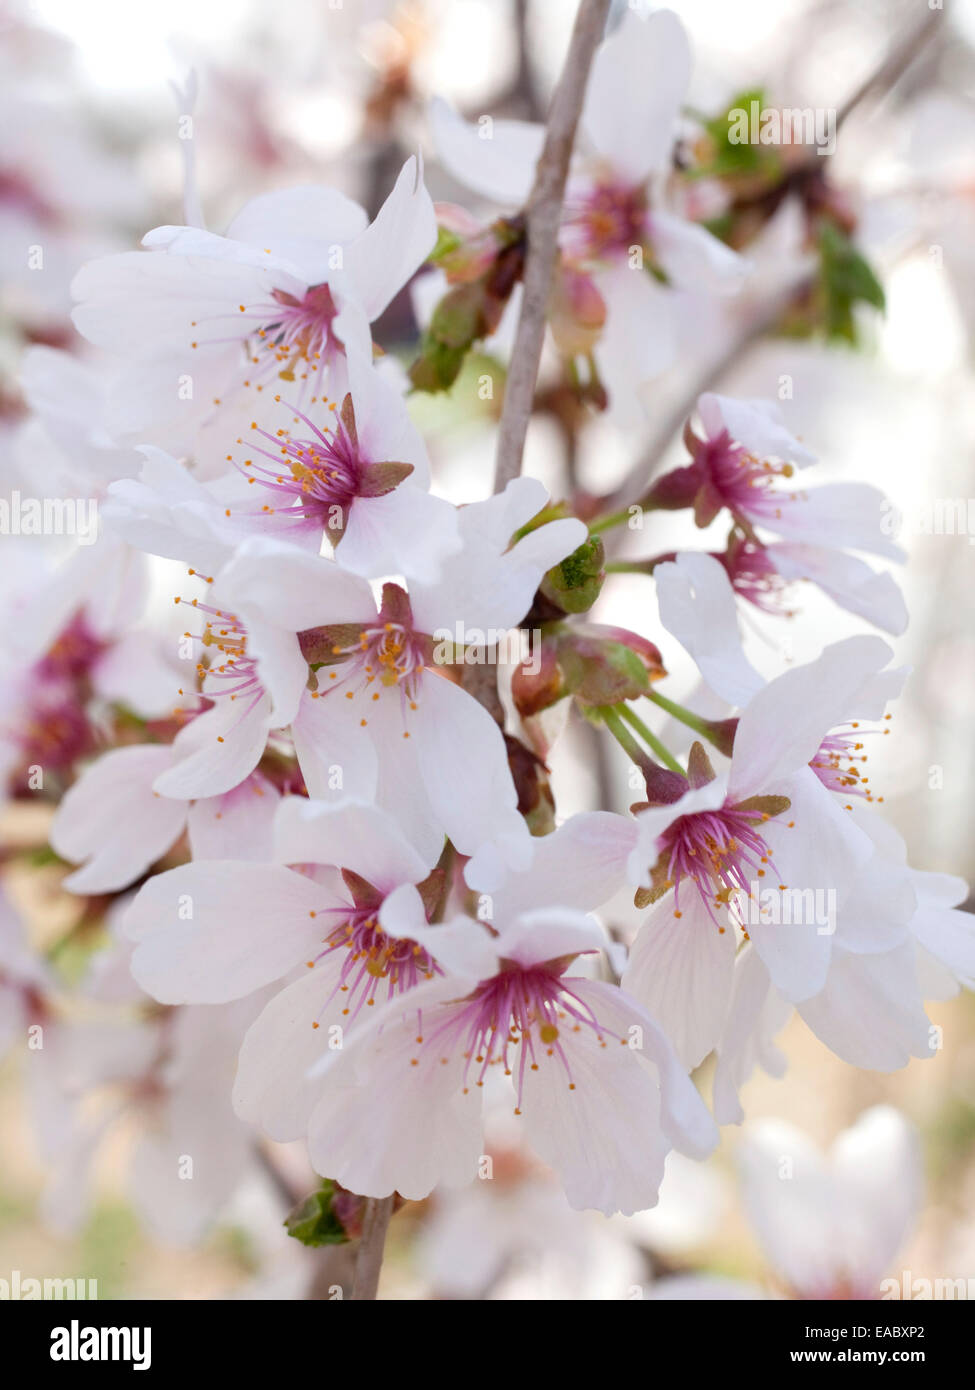 Dettaglio dei fiori di ciliegio su albero in primavera. Foto Stock